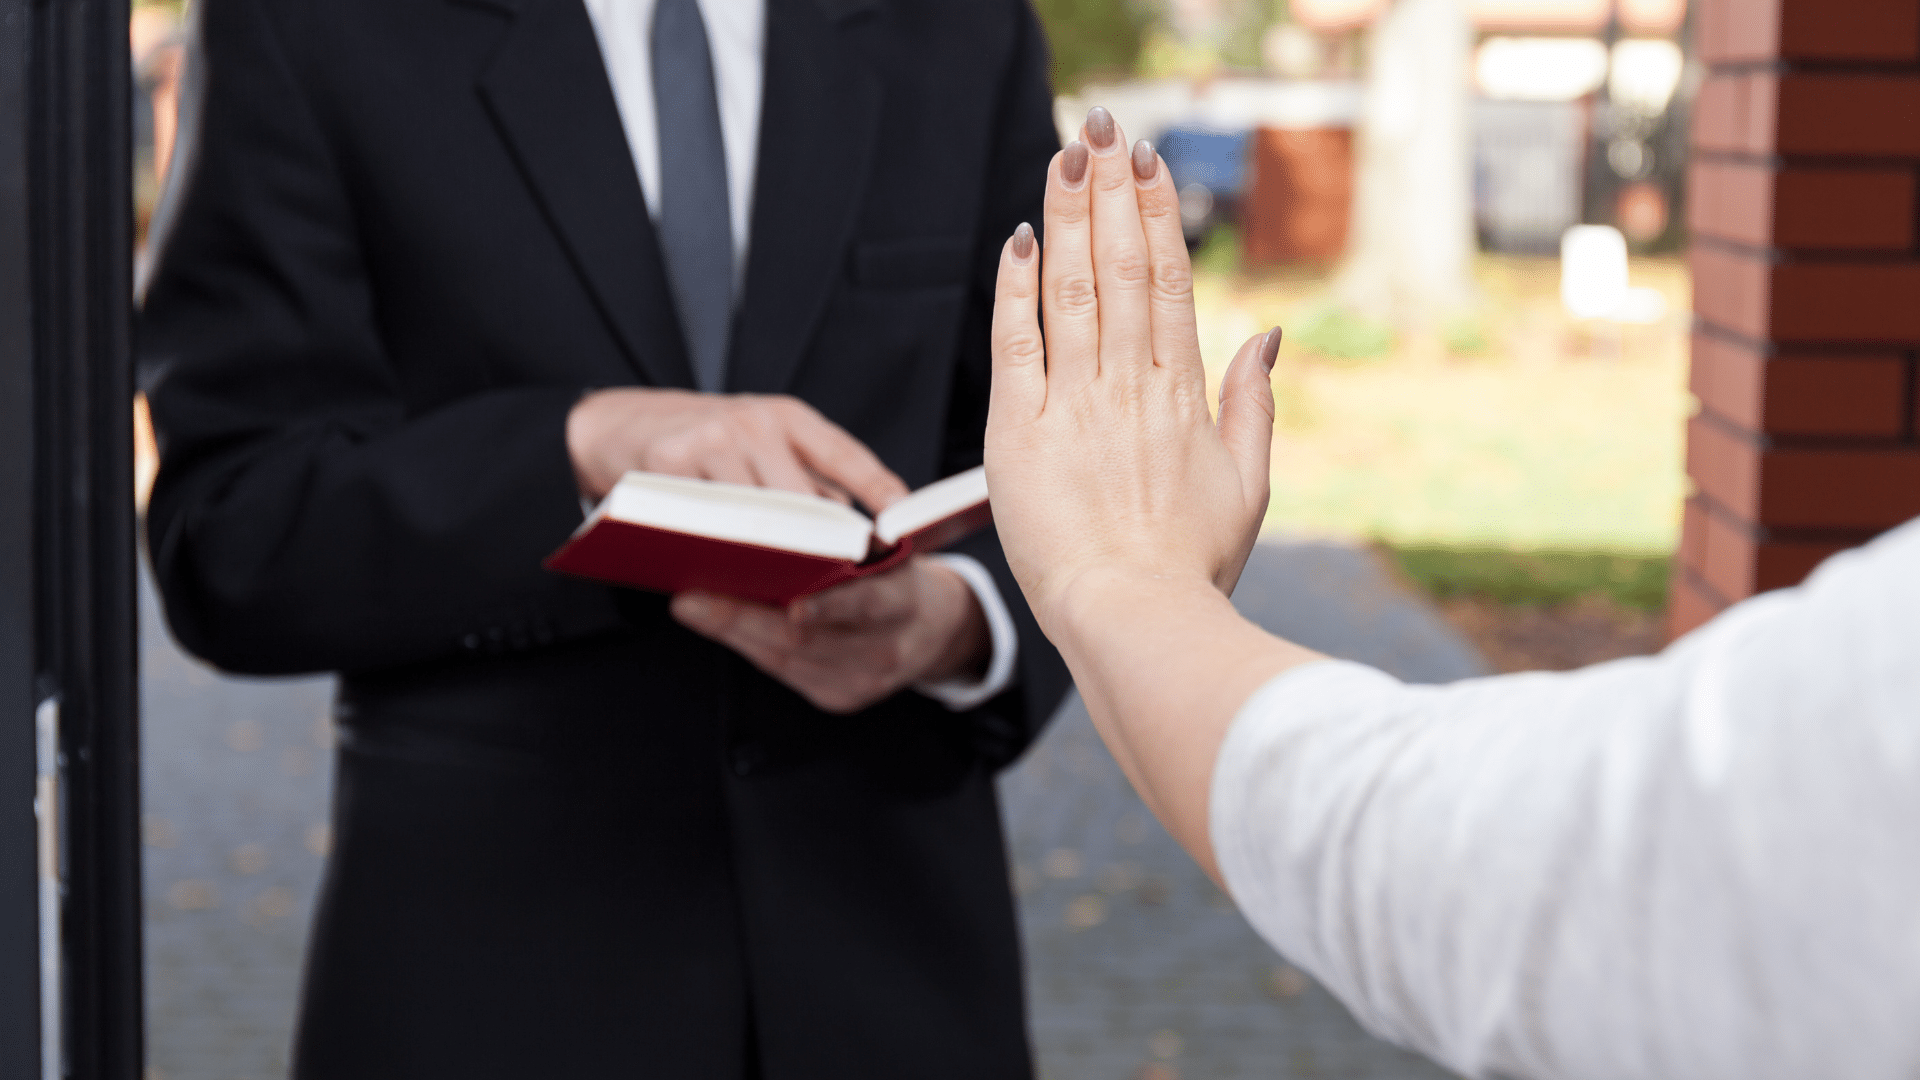 témoin de jéhovah